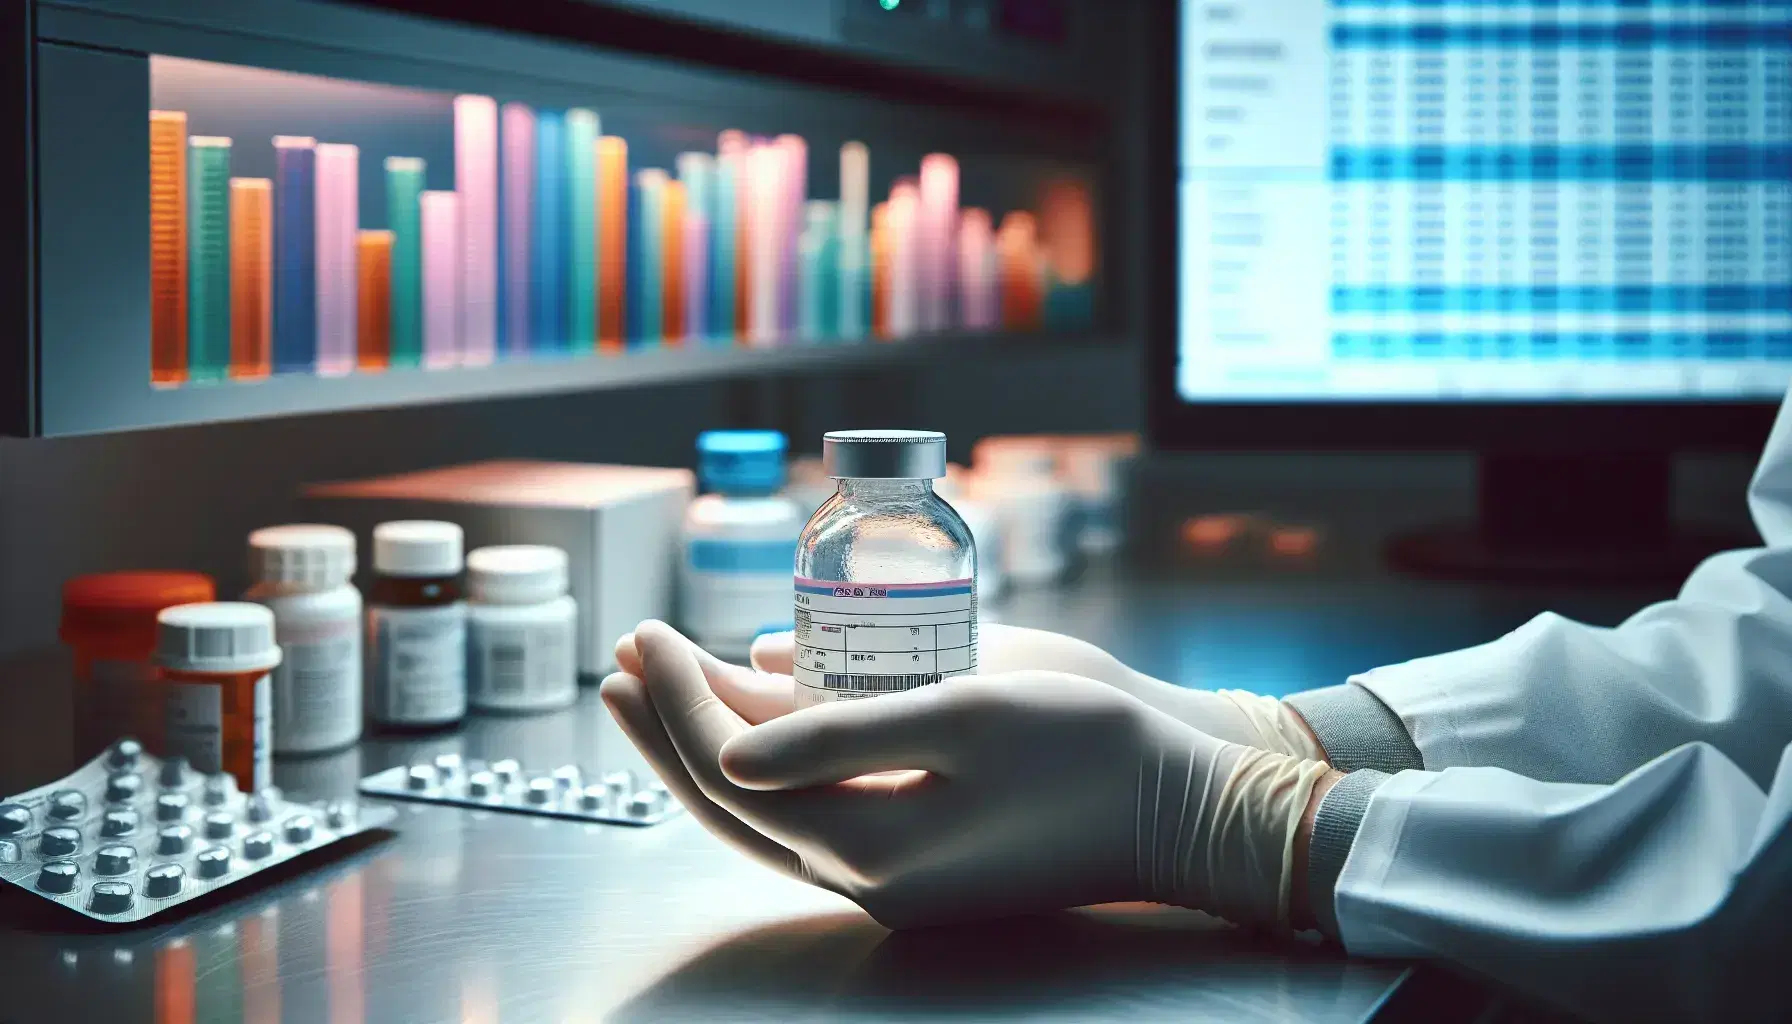 Manos con guantes sosteniendo botella de medicina transparente con tapa blanca en laboratorio farmacéutico, con estantes de medicamentos desenfocados y gráficos en monitor al fondo.